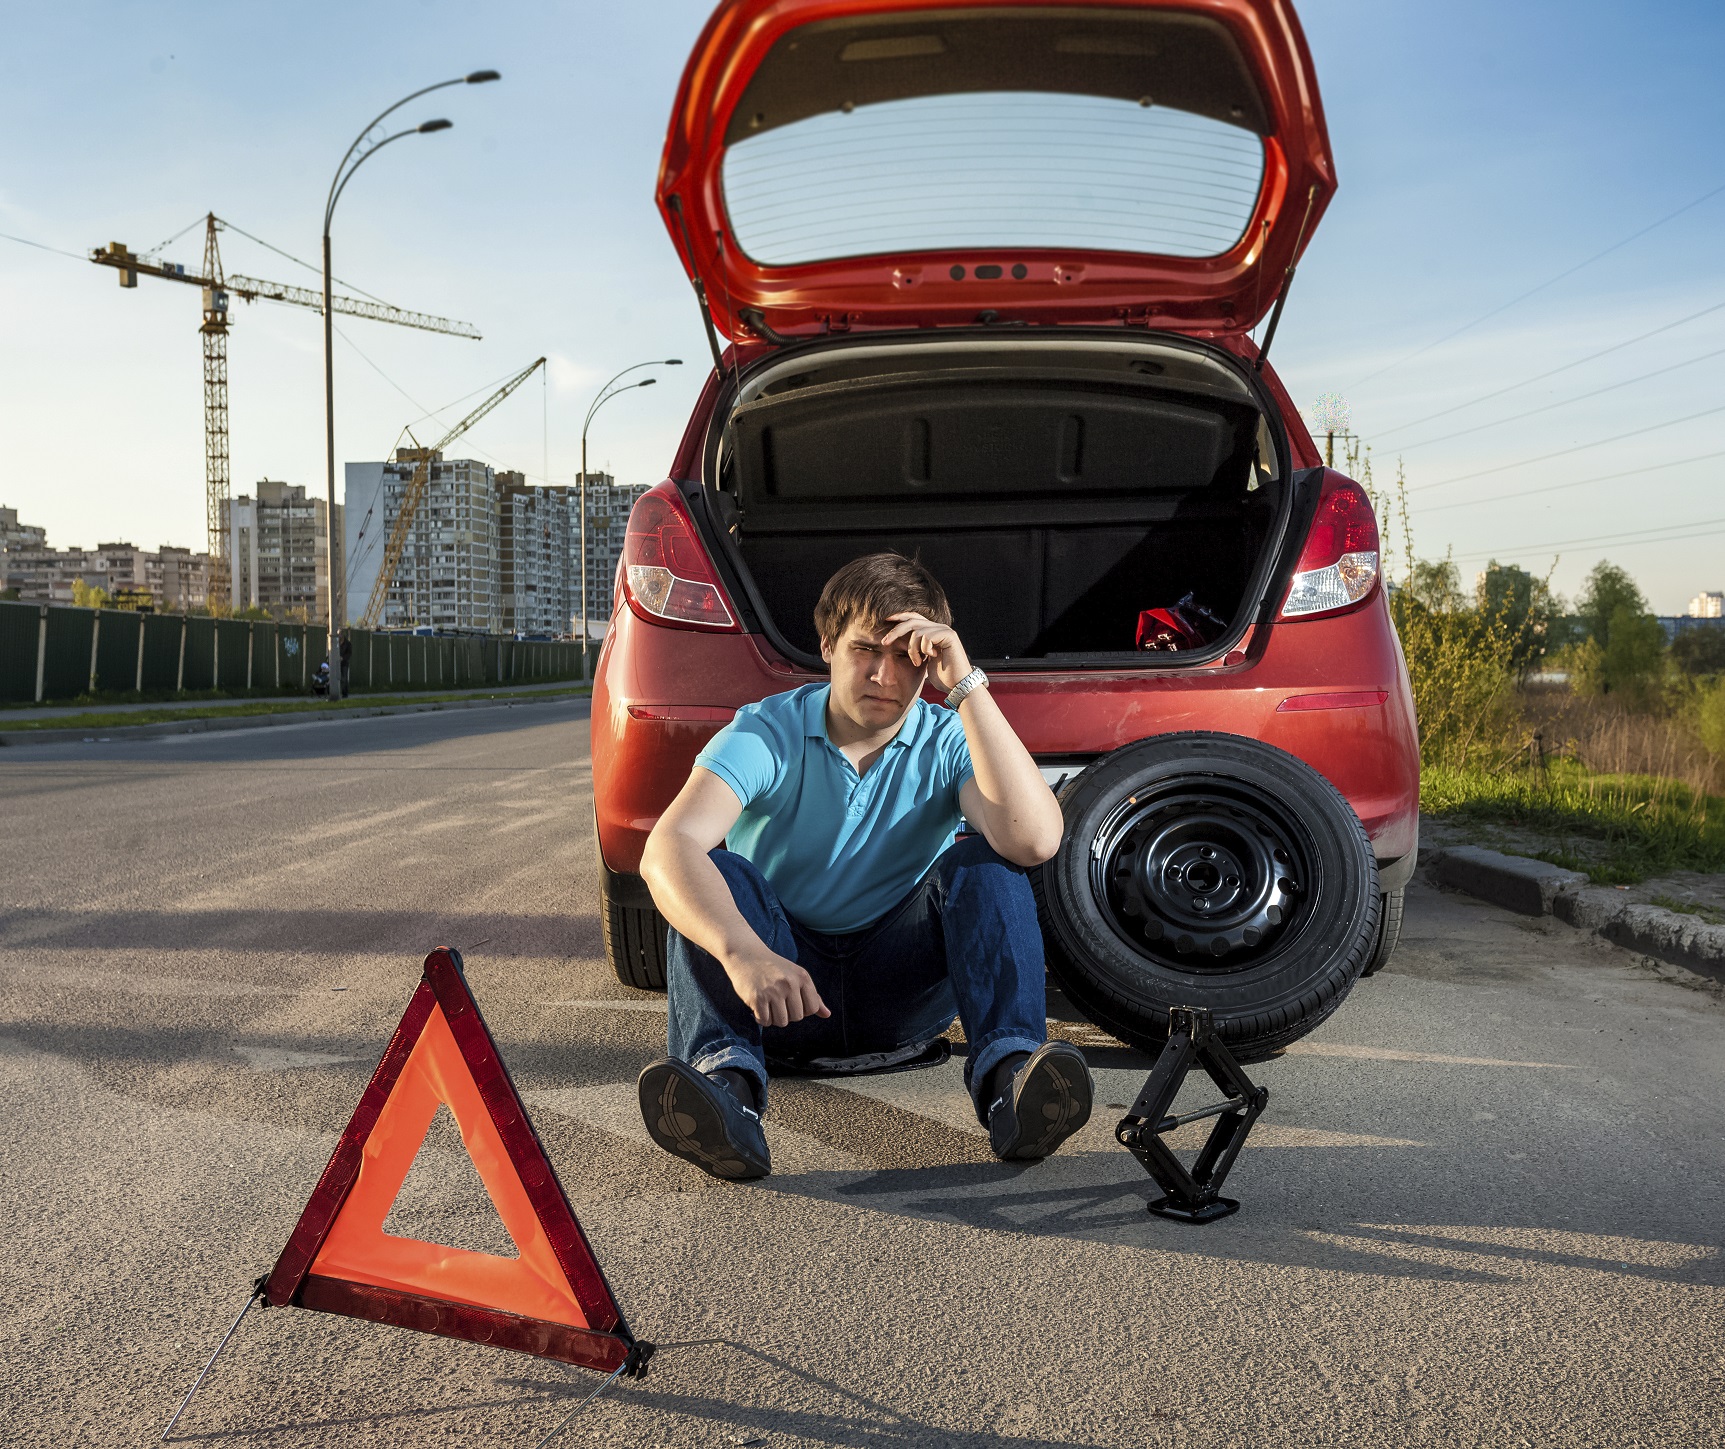 当您的车辆静止并导致阻塞时，可能会使用危险警告灯